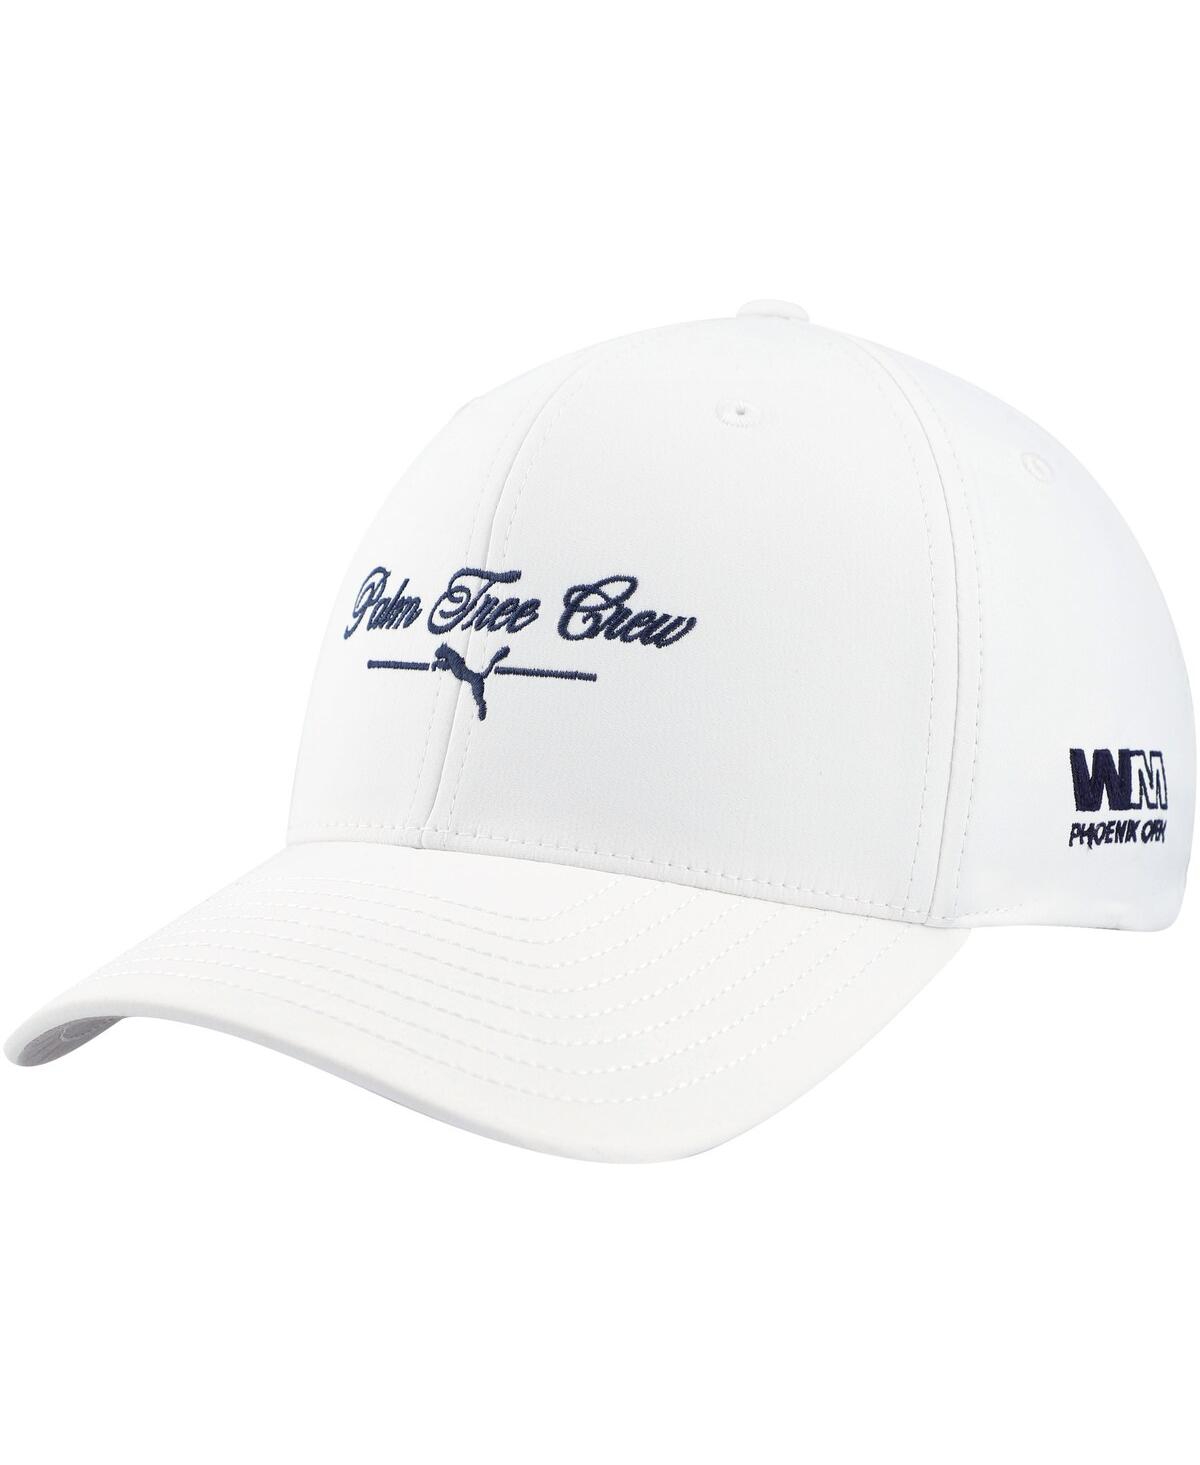 Shop Puma Men's  X Ptc White Wm Phoenix Open Script Adjustable Hat